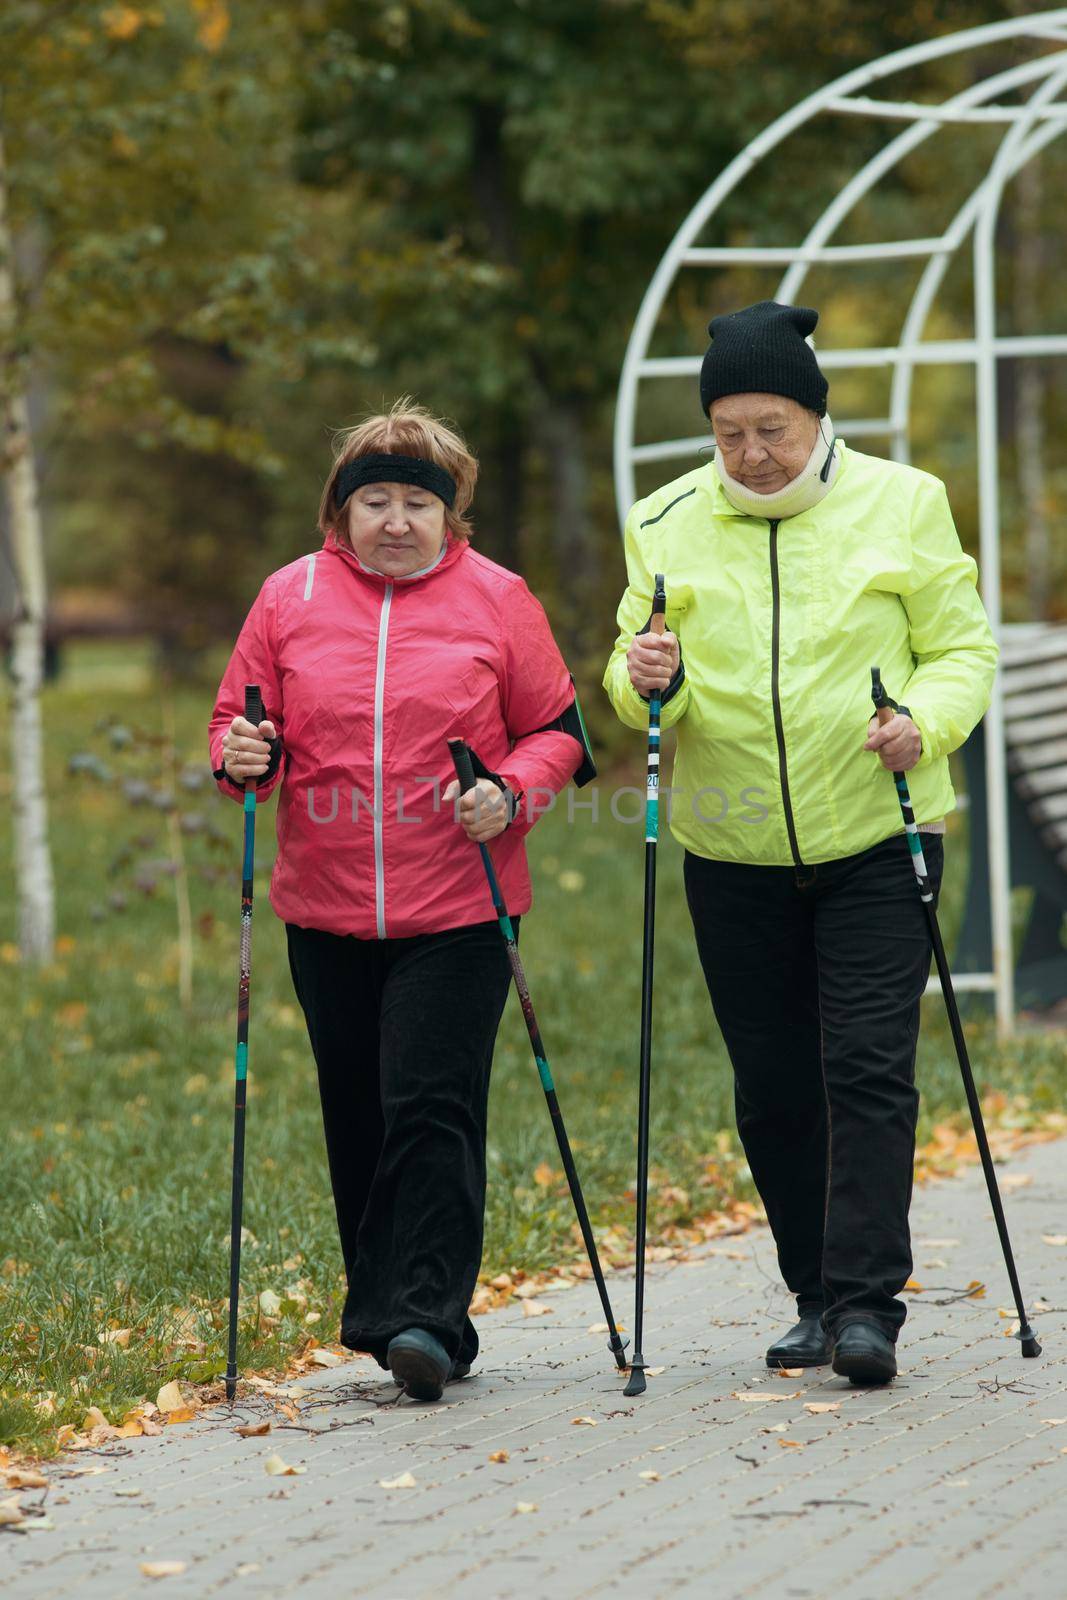 Old women in jackets walking on sidewalk in an autumn park during a scandinavian walk. Talking